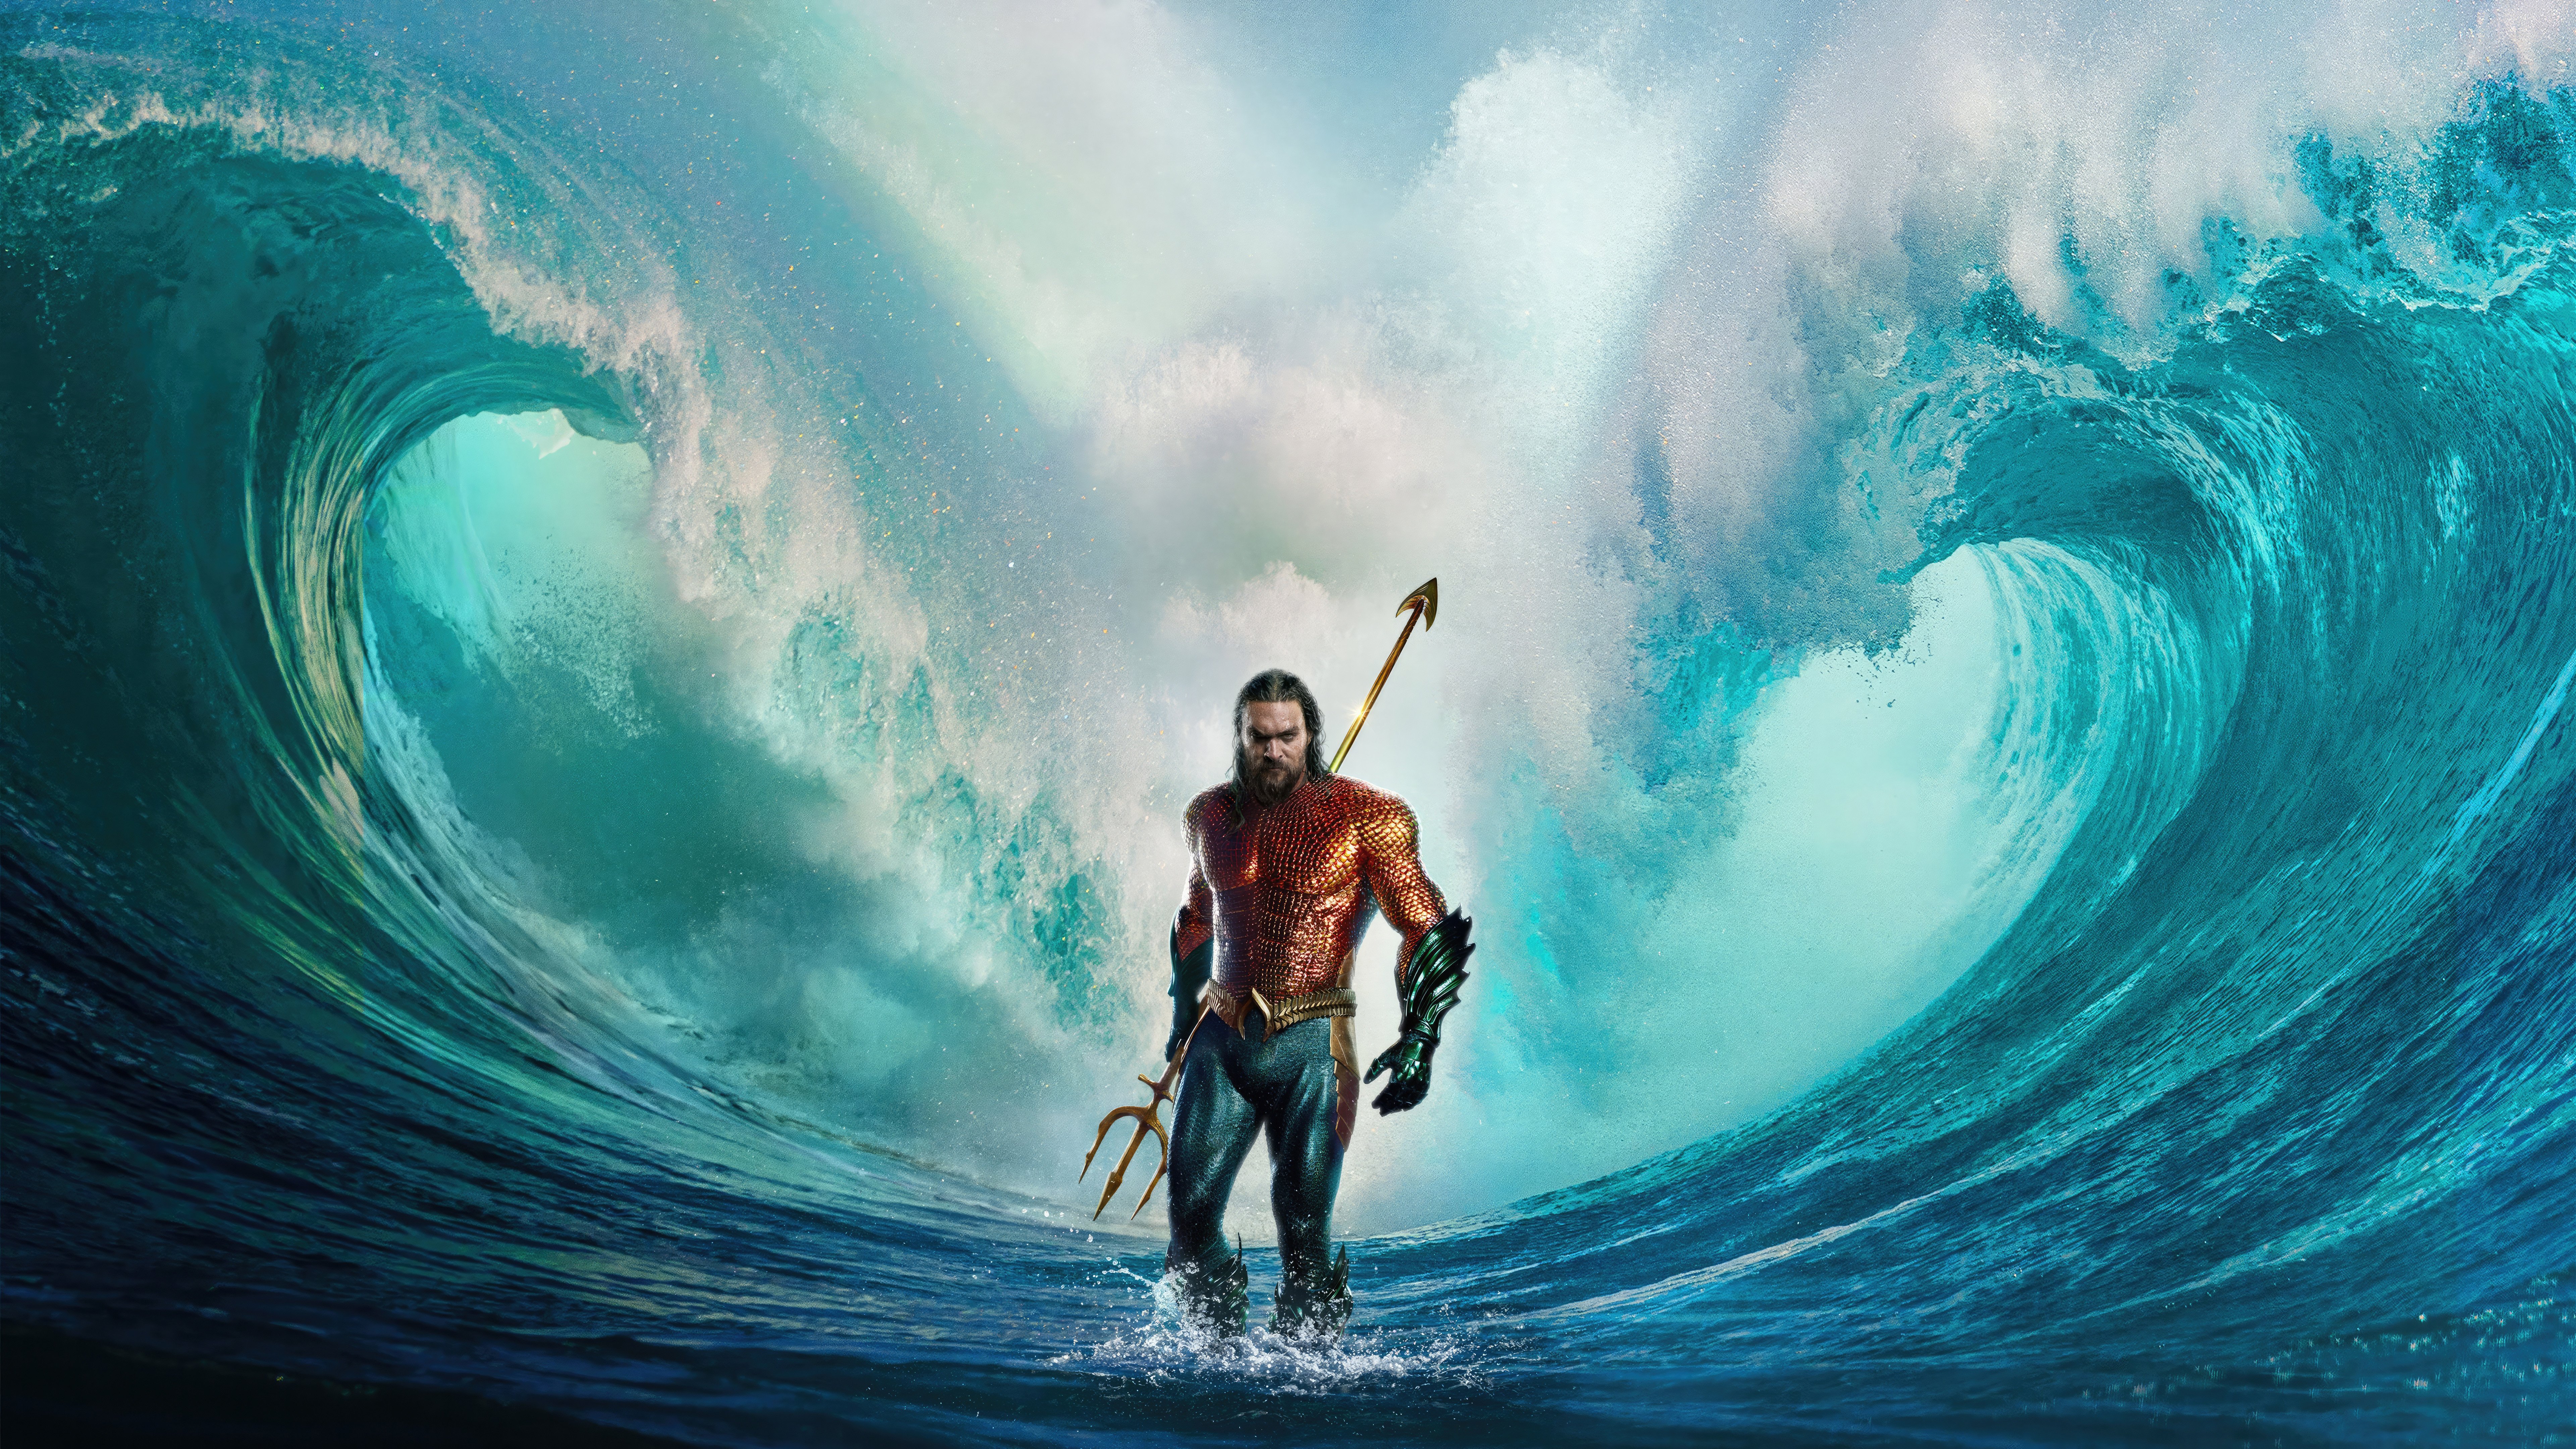 Fondos de pantalla Aquaman and the Lost Kingdom